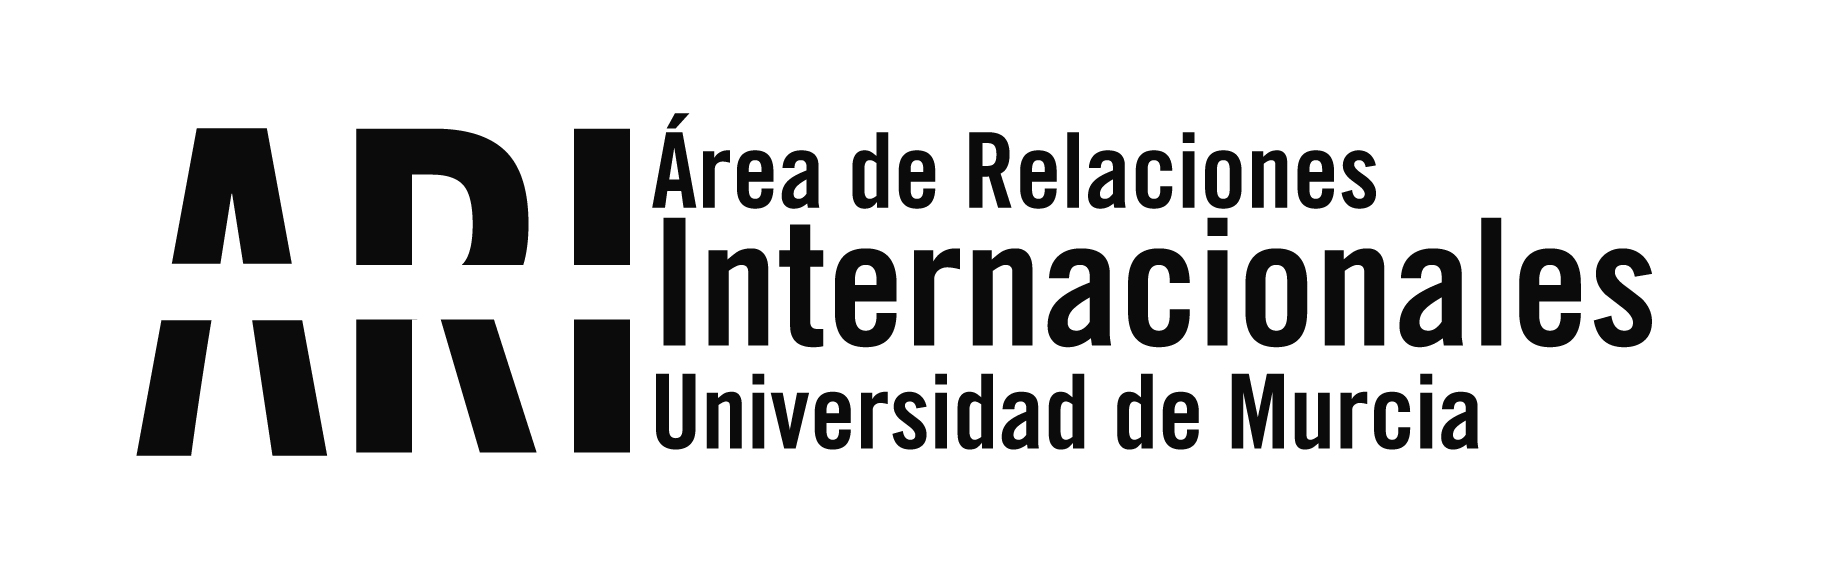 Visita del Colaborador Honorífico de la UMU en Argentina - Visita del Colaborador Honorífico de la UMU en Argentina - Área de Relaciones Internacionales